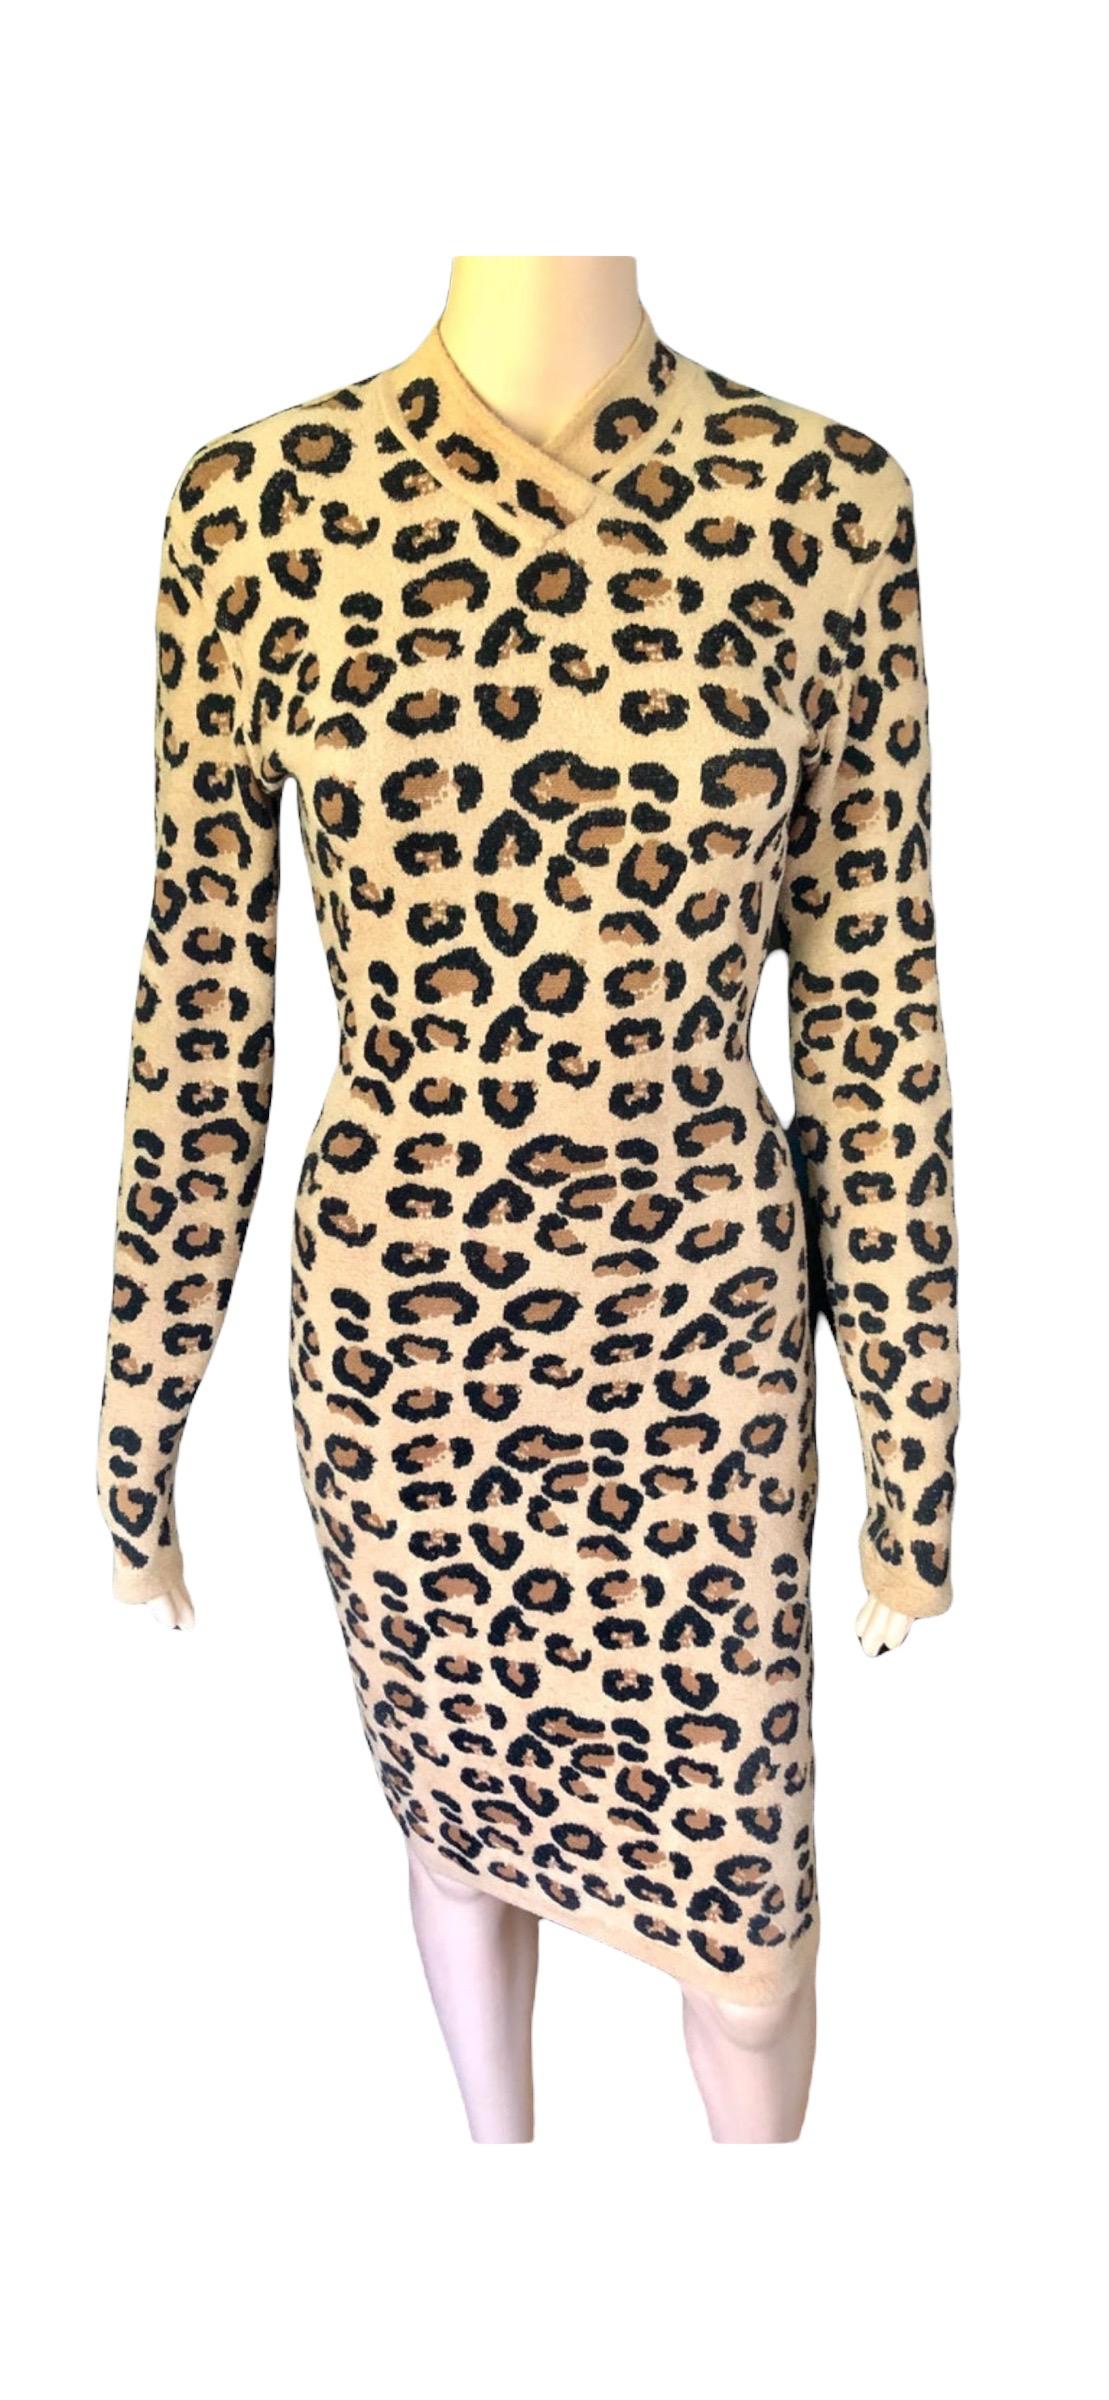 Azzedine Alaia F/W 1991 Runway Vintage Iconic Leopard Print Bodycon Dress For Sale 5